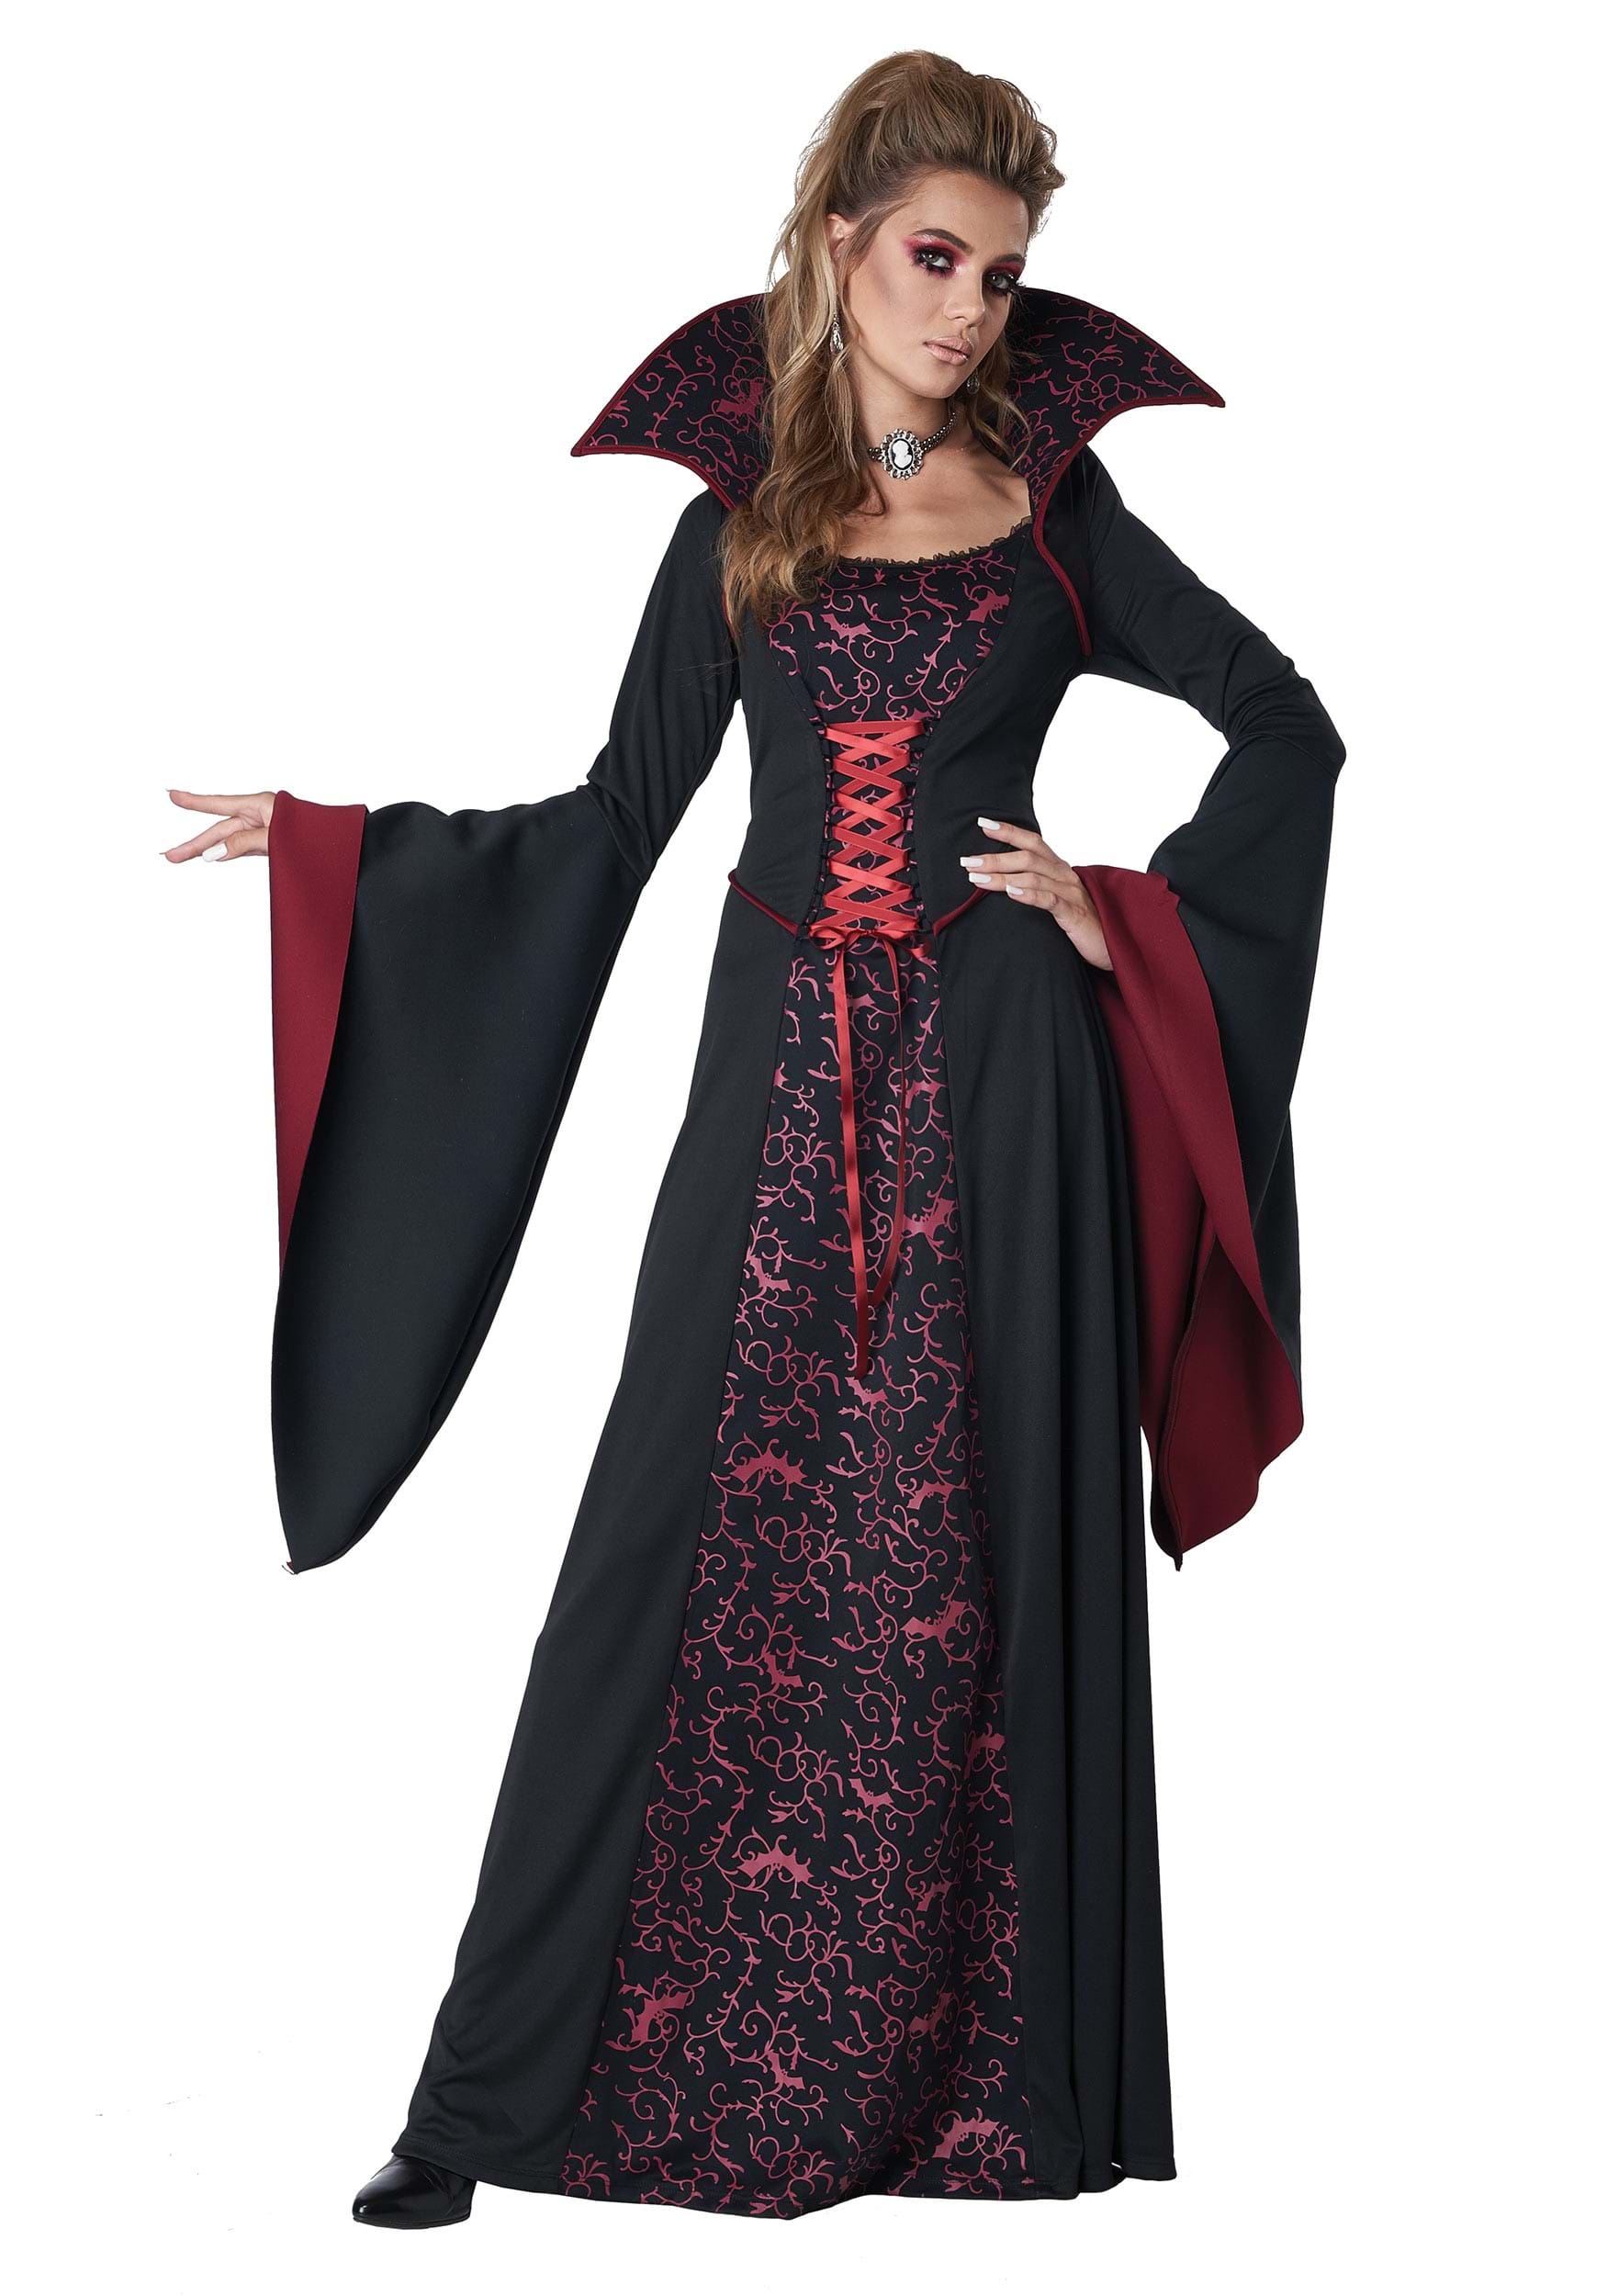 girl vampire costume